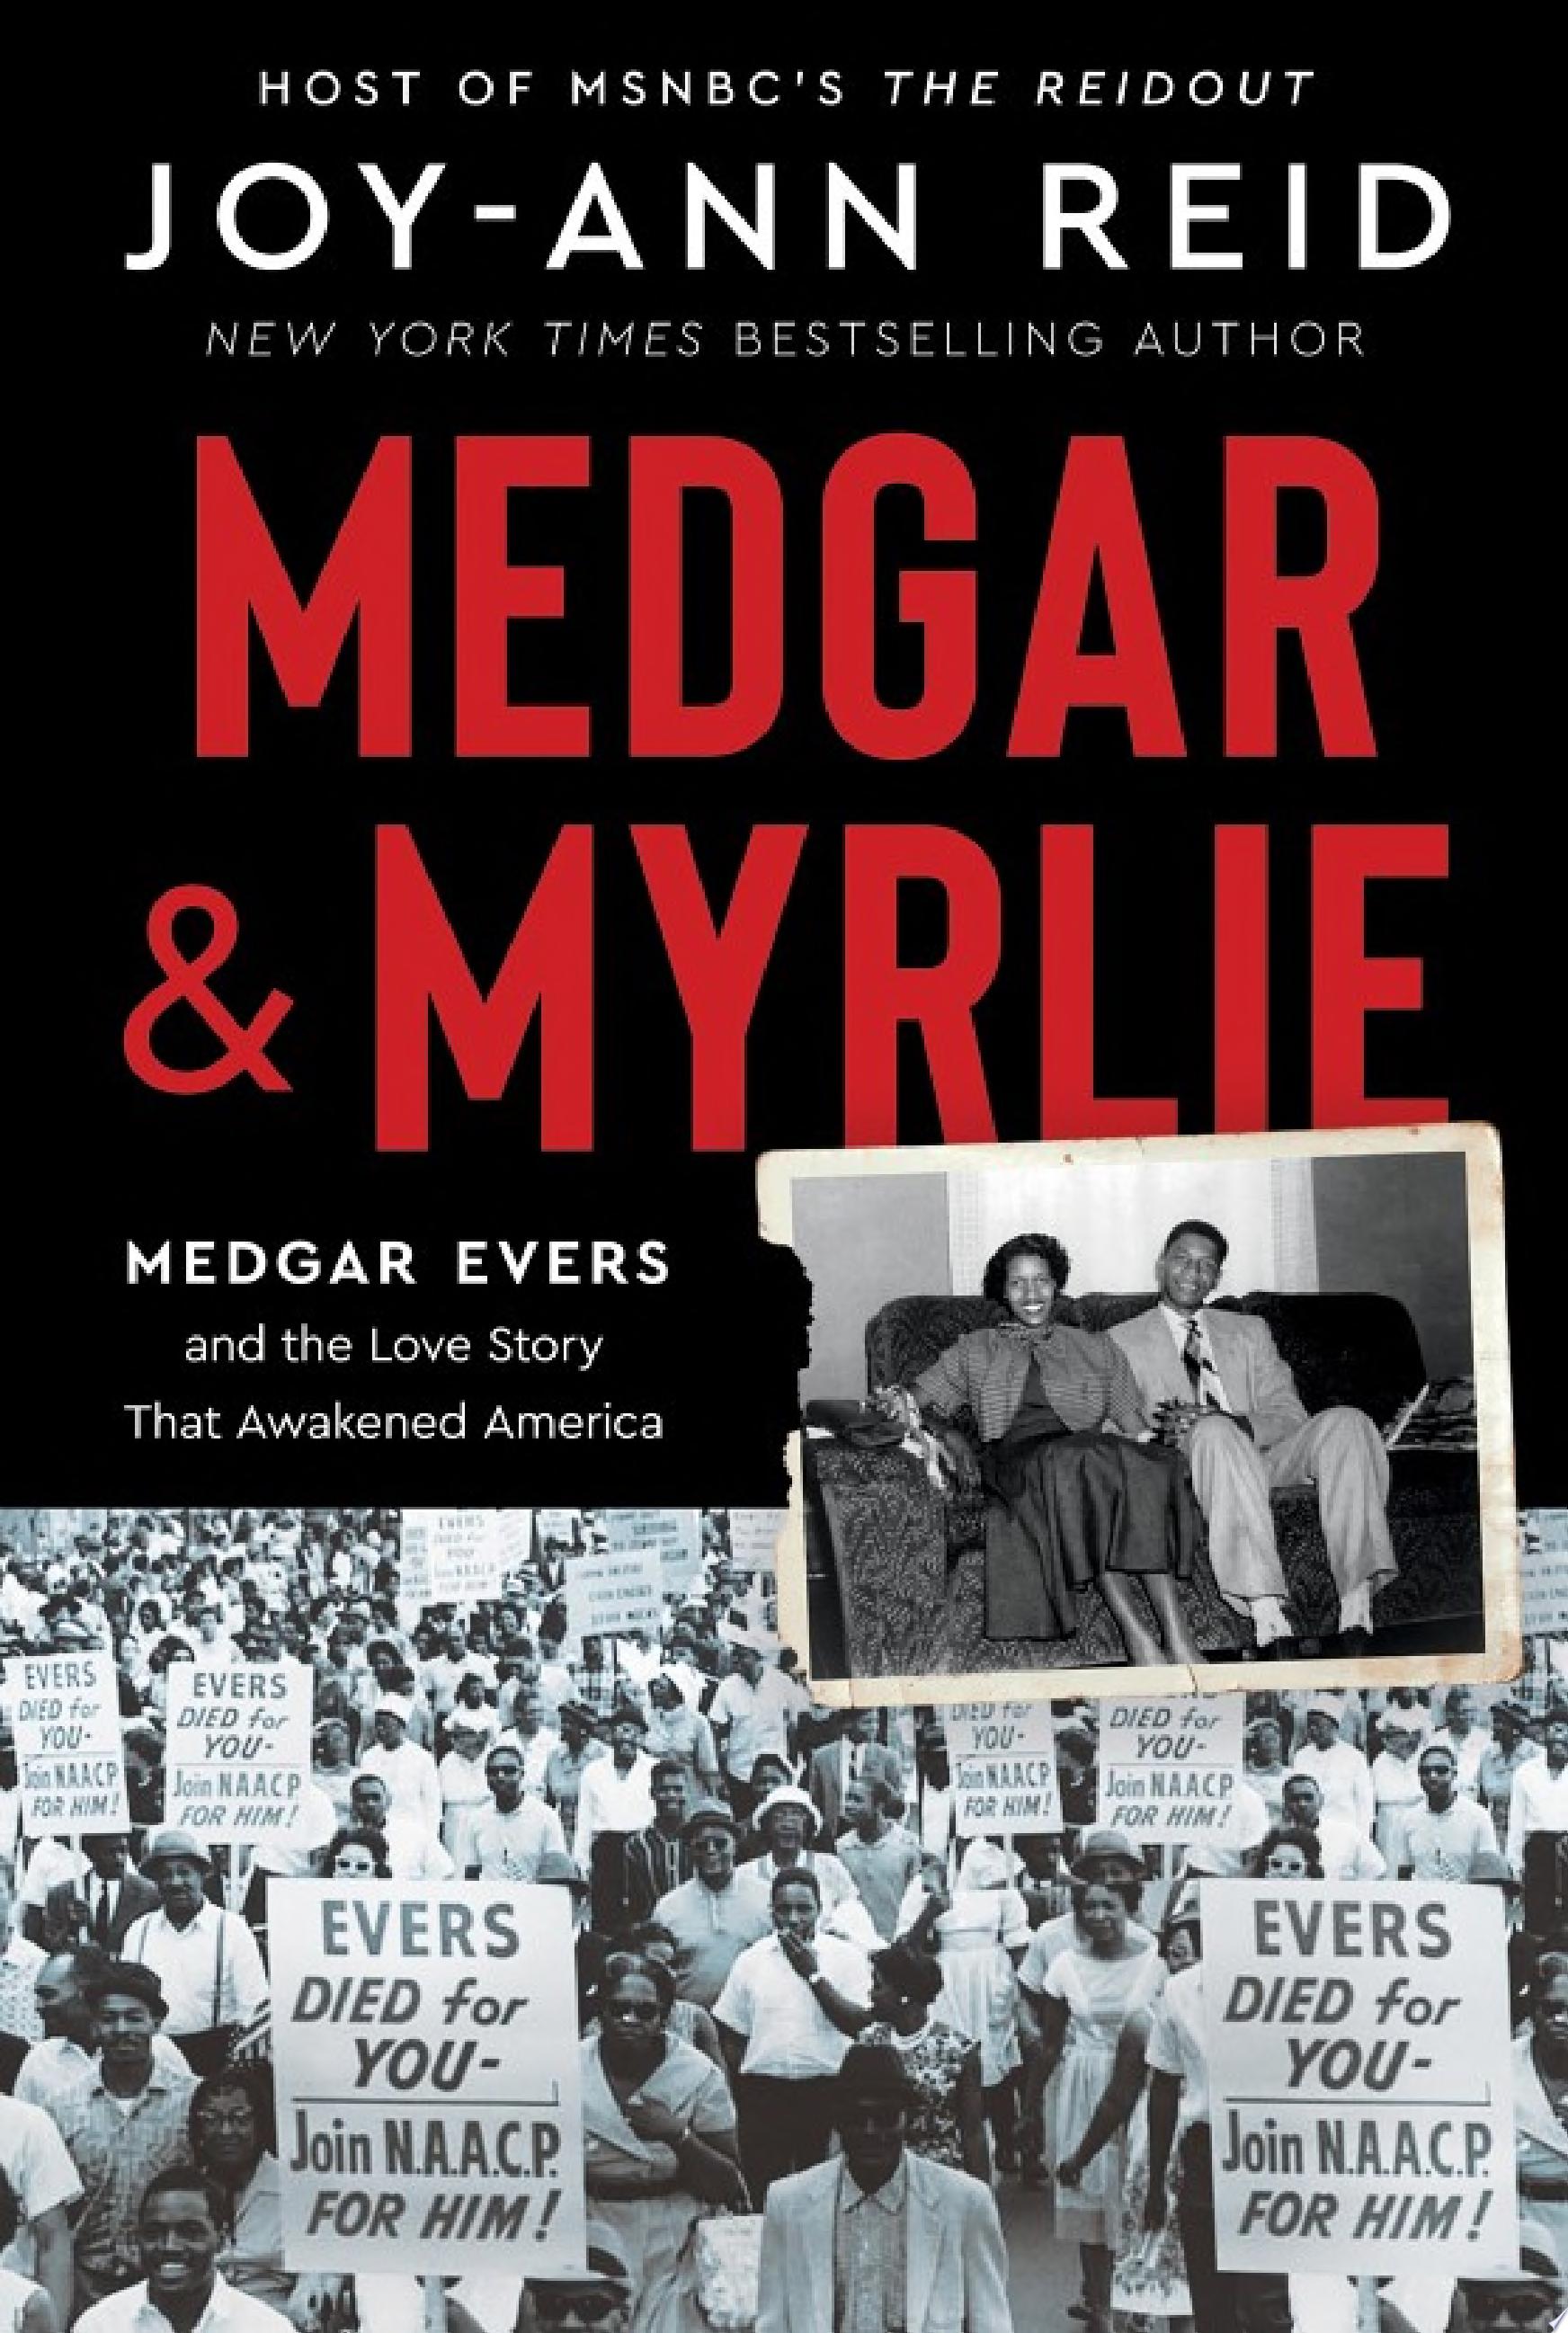 Image for "Medgar and Myrlie"